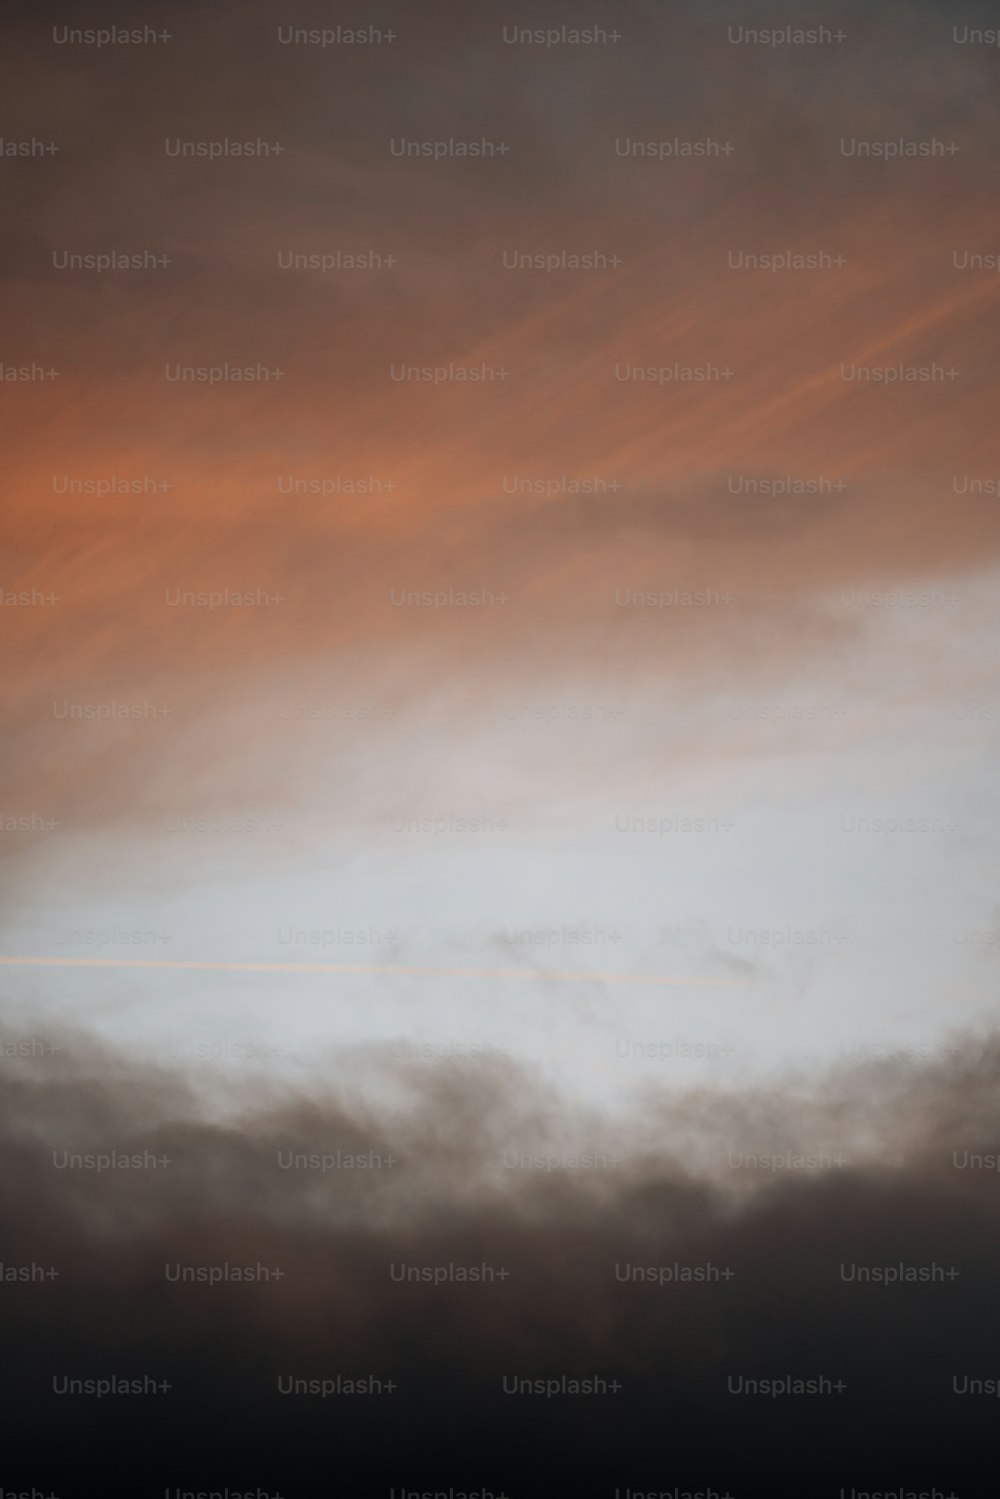 Ein Flugzeug, das bei Sonnenuntergang durch einen bewölkten Himmel fliegt